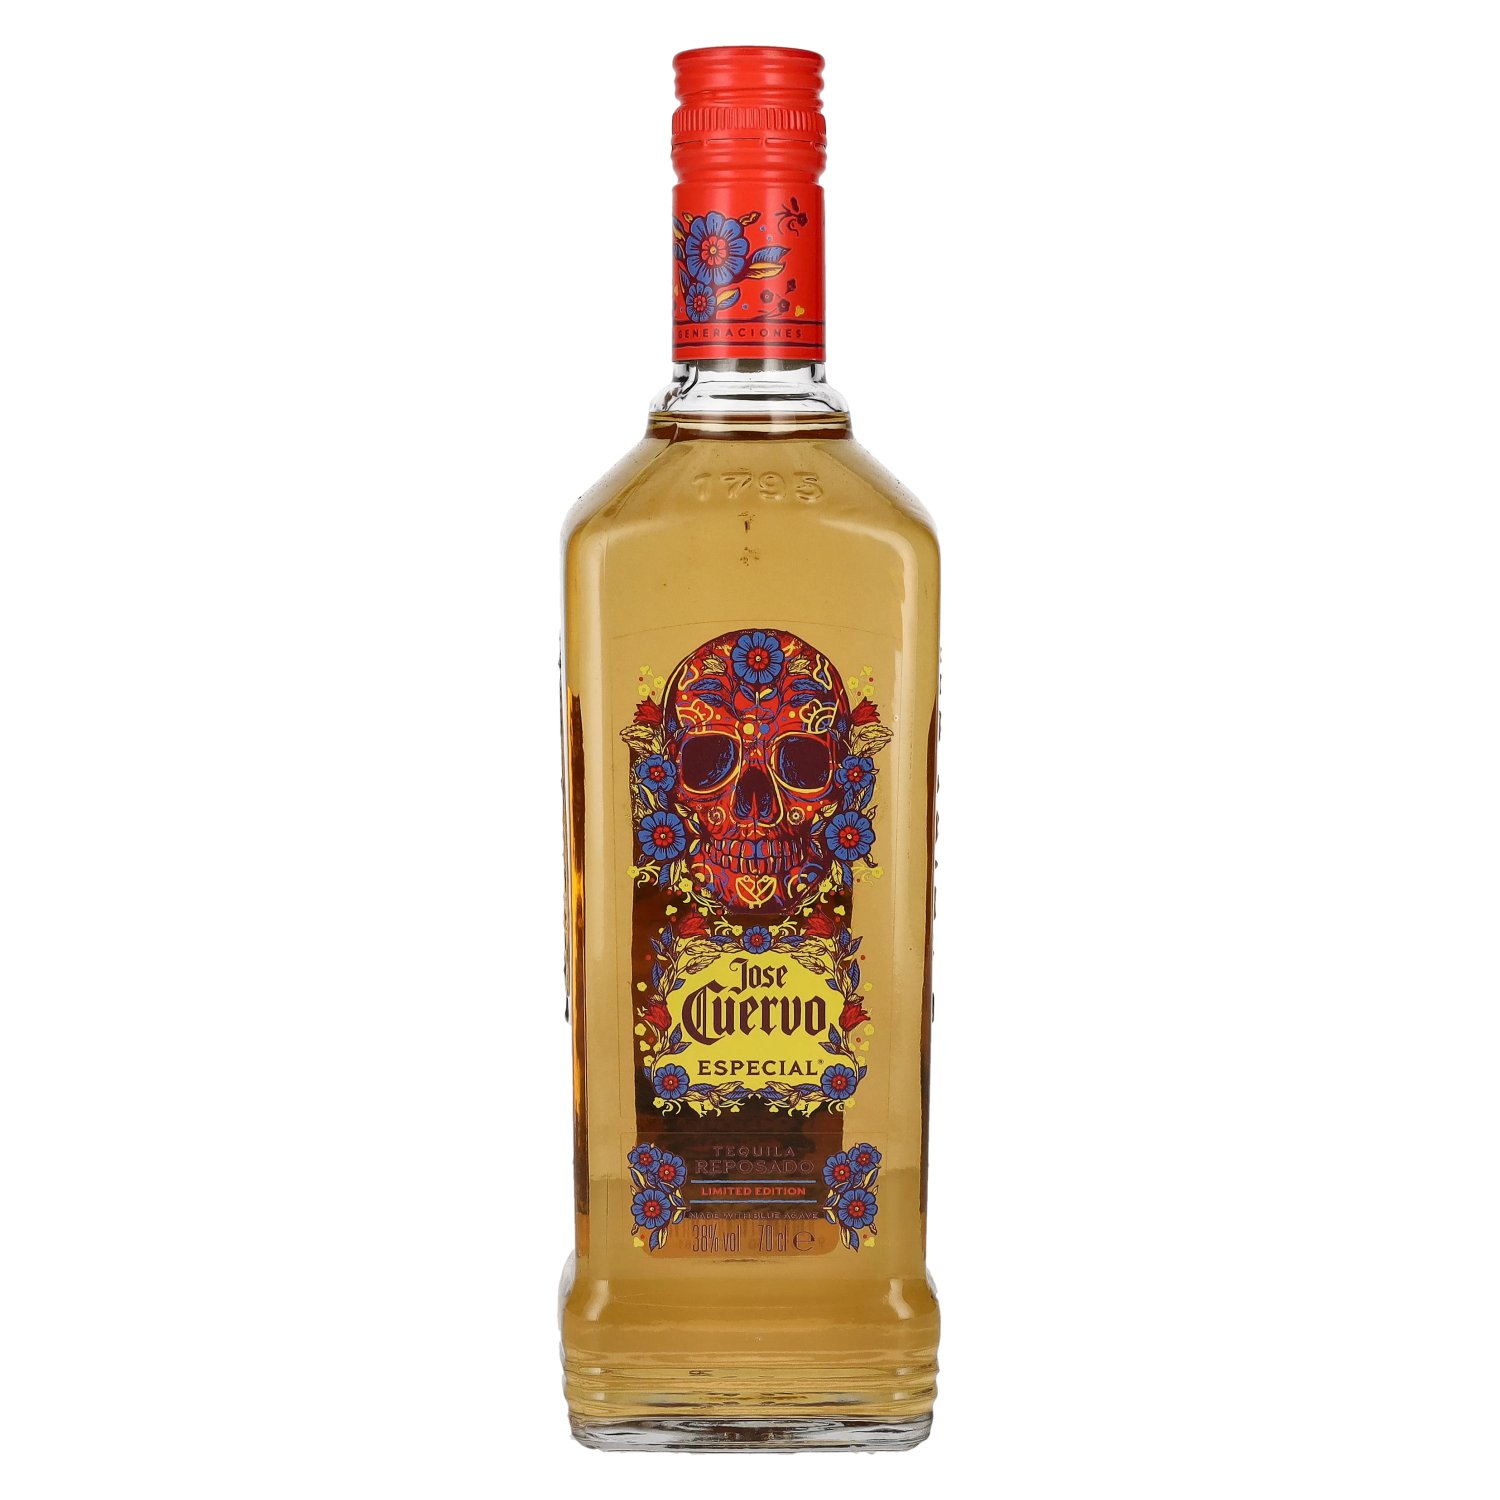 the 0,7l José Day 38% Vol. Reposado Edition Cuervo Especial Tequila Limited Dead of